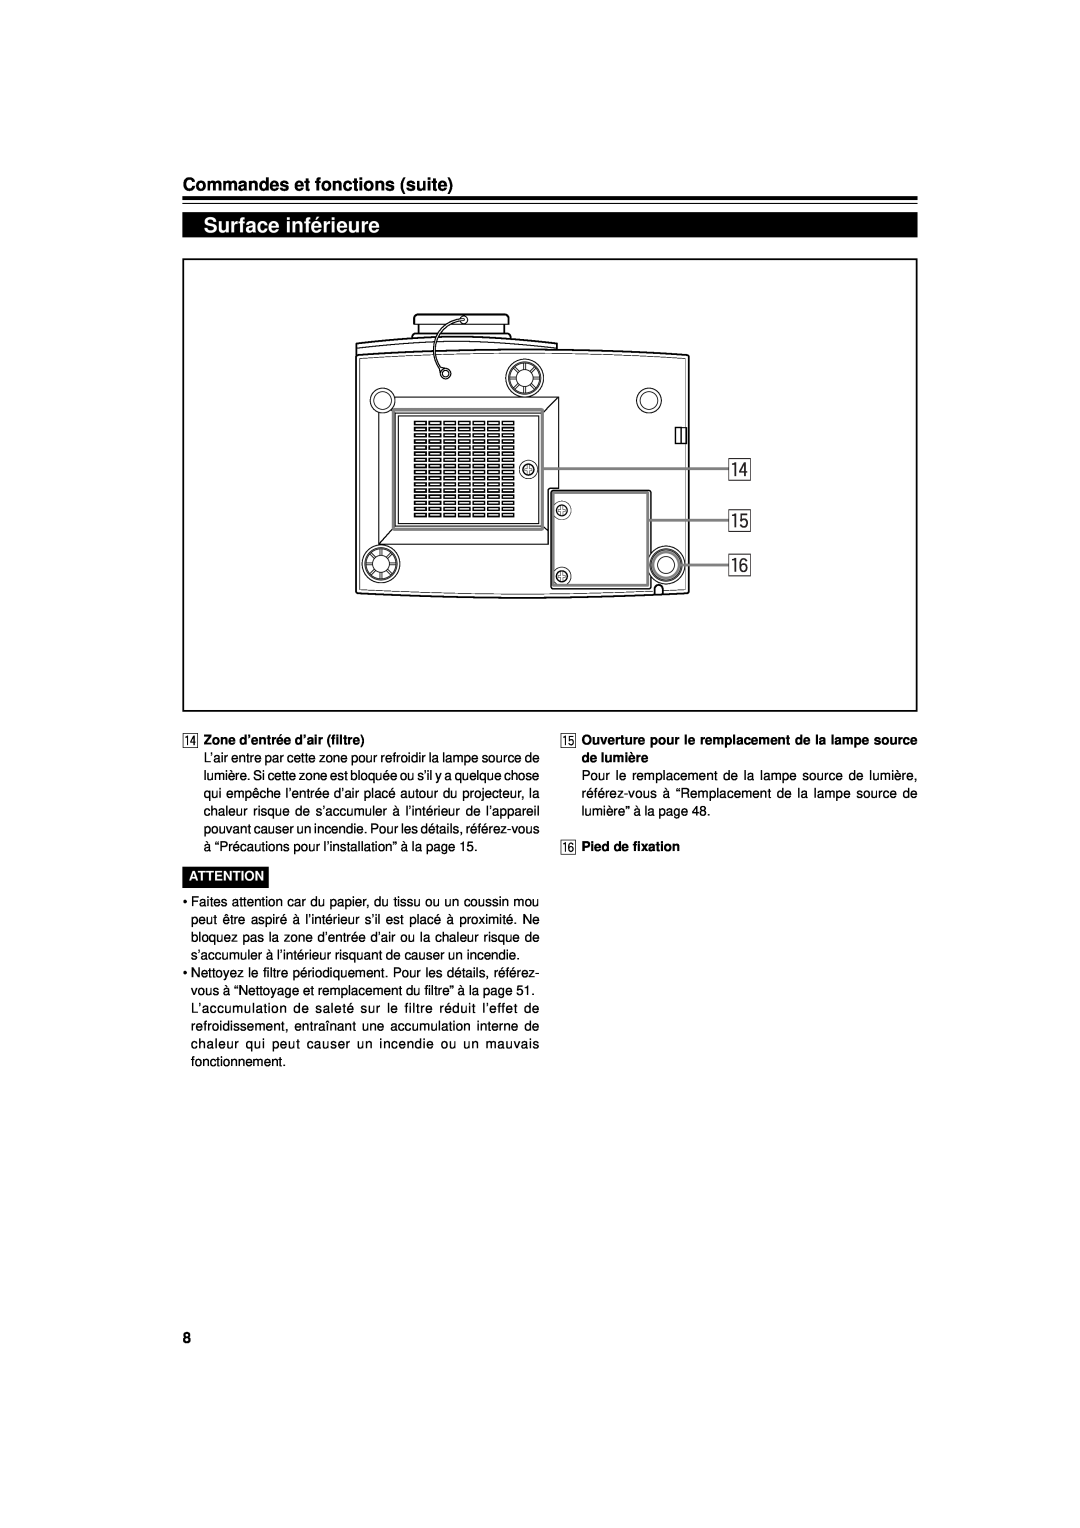 JVC DLA-G11U manual Surface inférieure, r t y, Commandes et fonctions suite, r Zone d’entrée d’air filtre, de lumière 